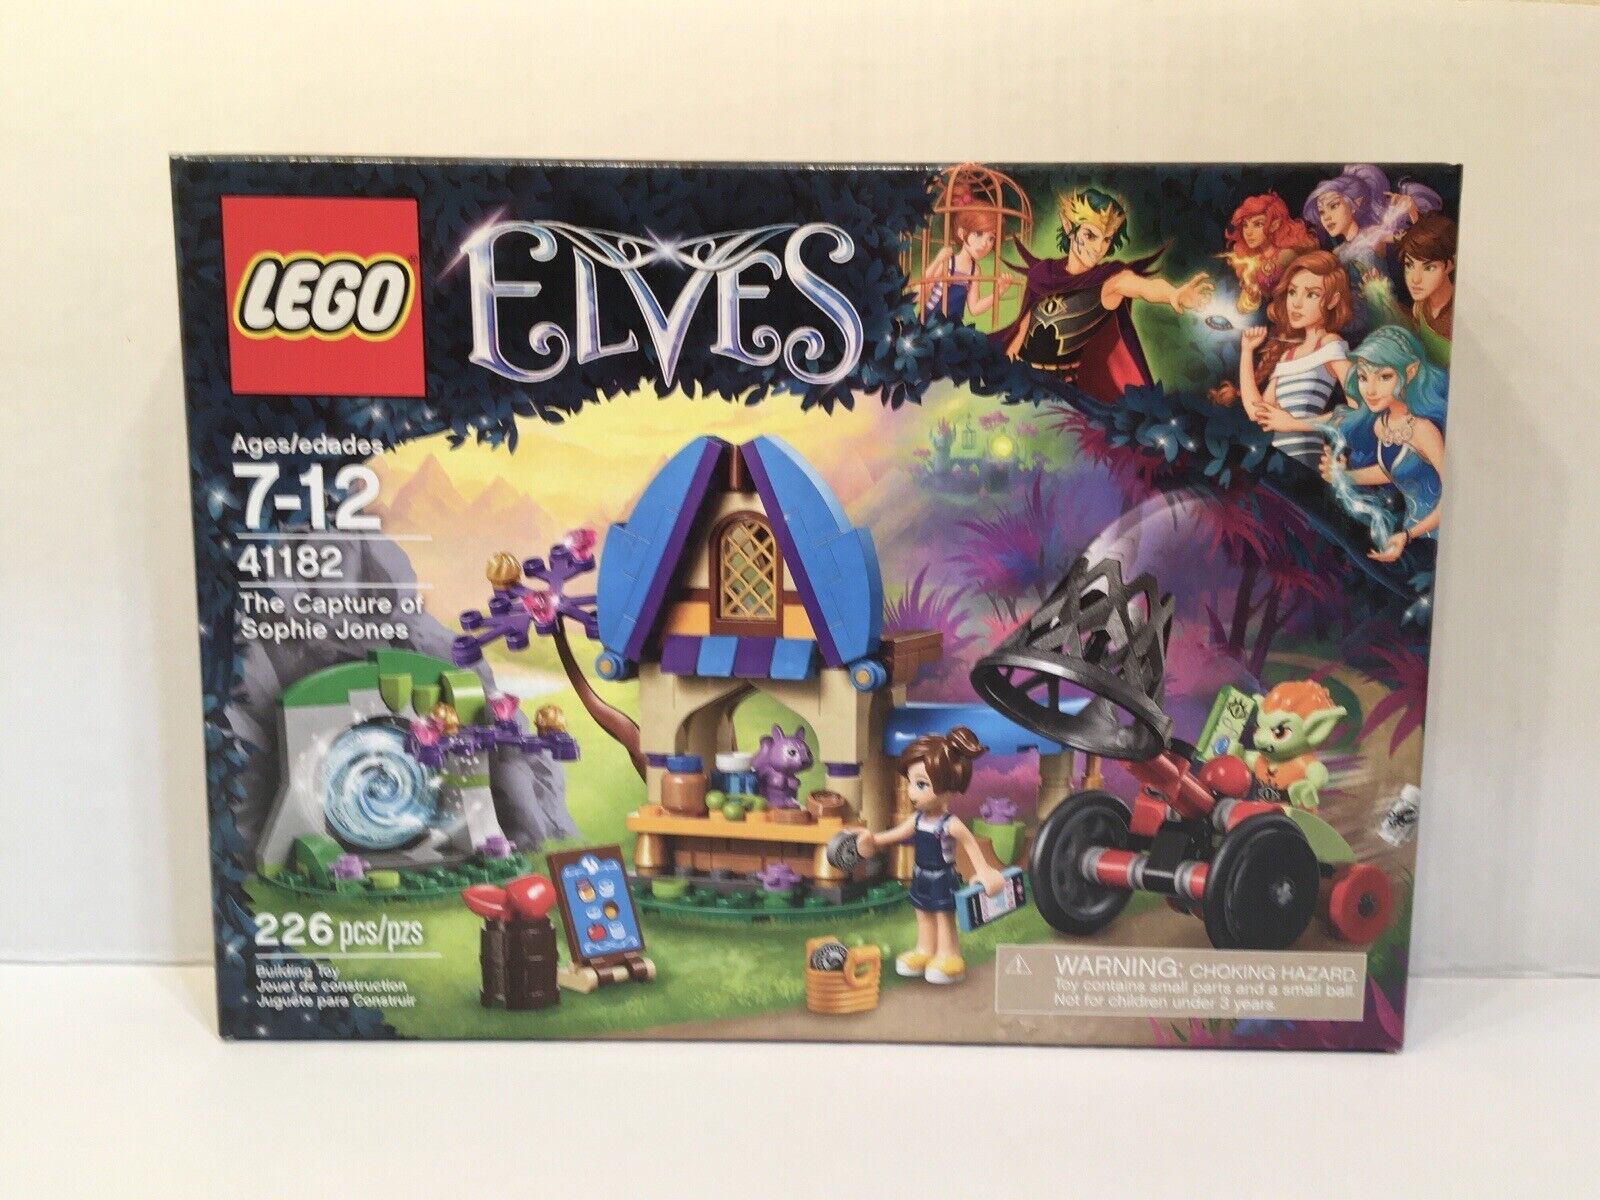 LEGO Elves - The Capture of Sophie Jones - 41182 - New Sealed - Goblin Barblin